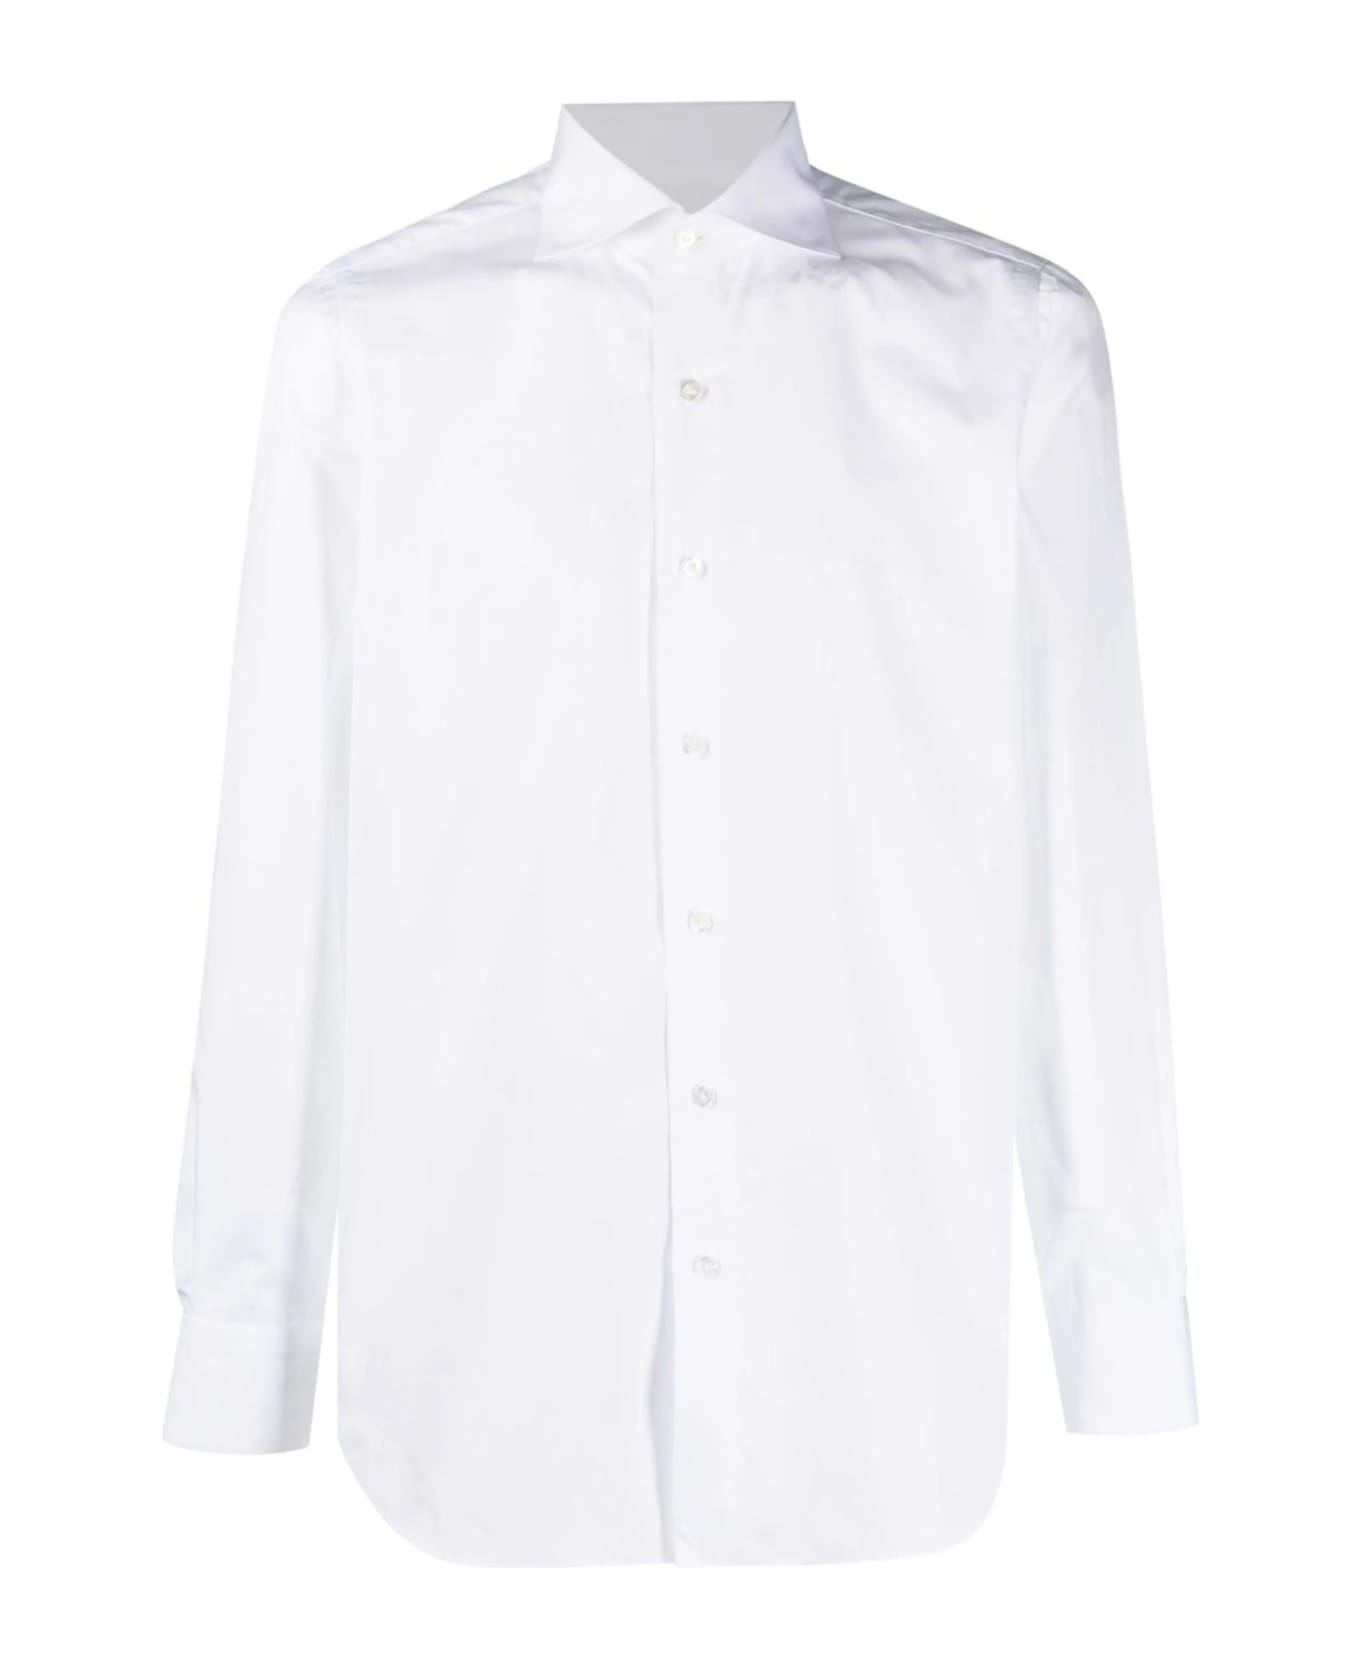 Finamore White Cotton Shirt - White シャツ